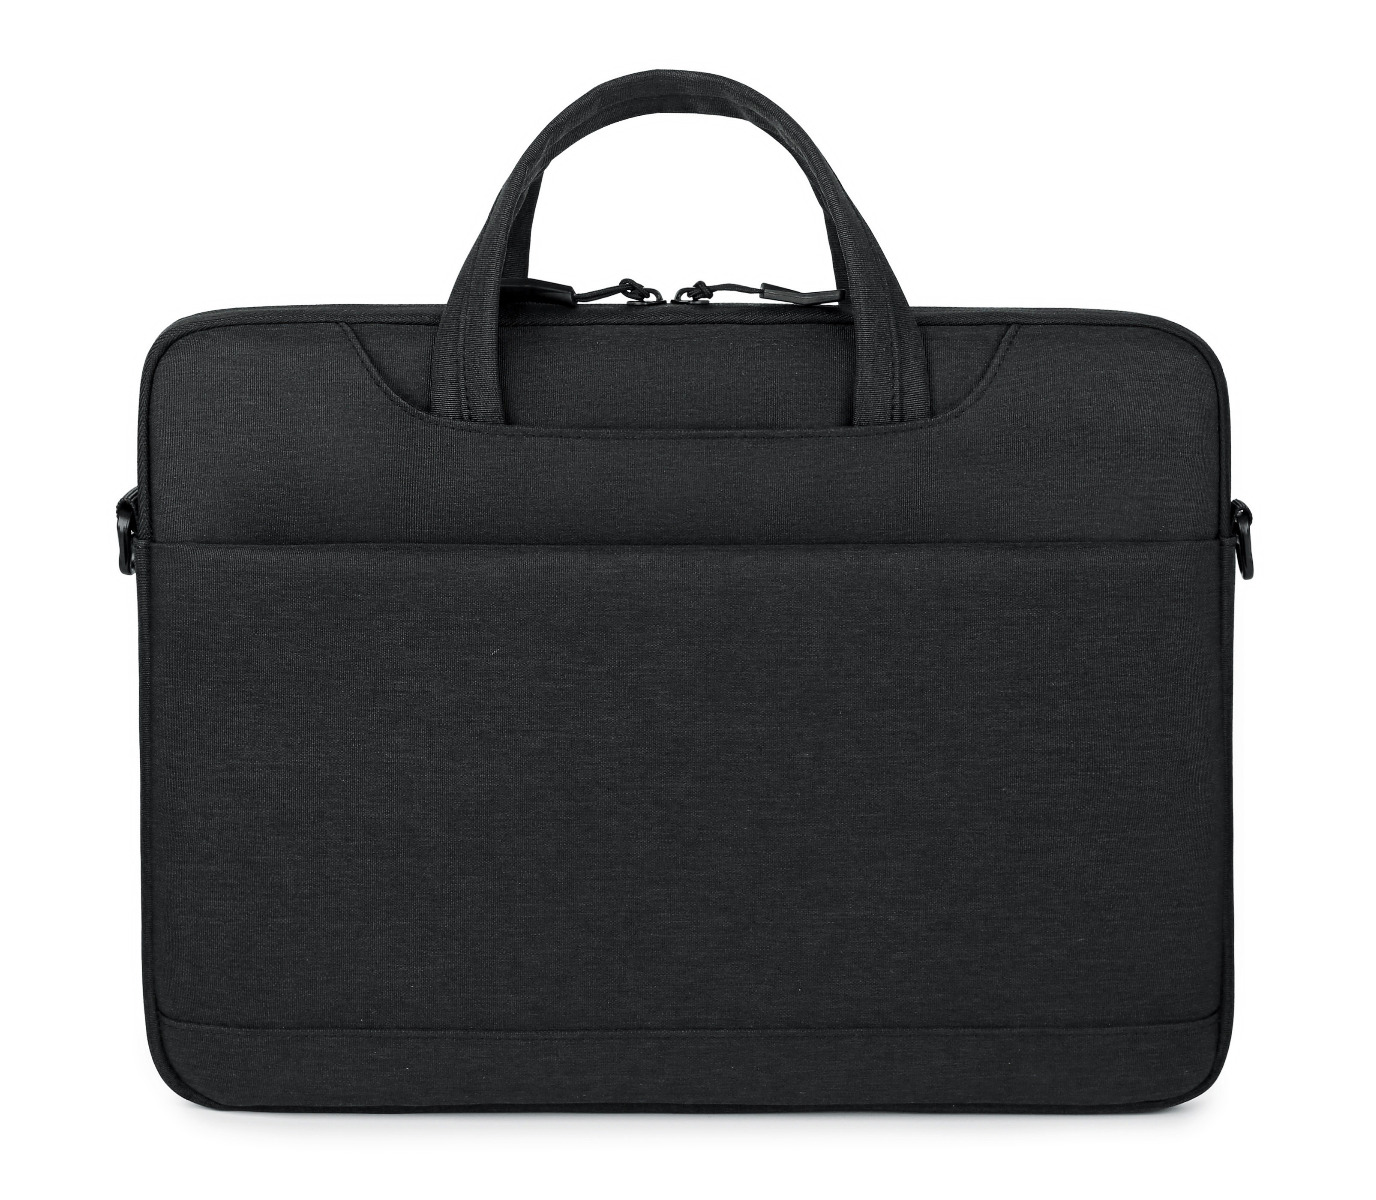 CARTINOE Laptop Bag, Sleeve fits,13", Black, BG-12-B